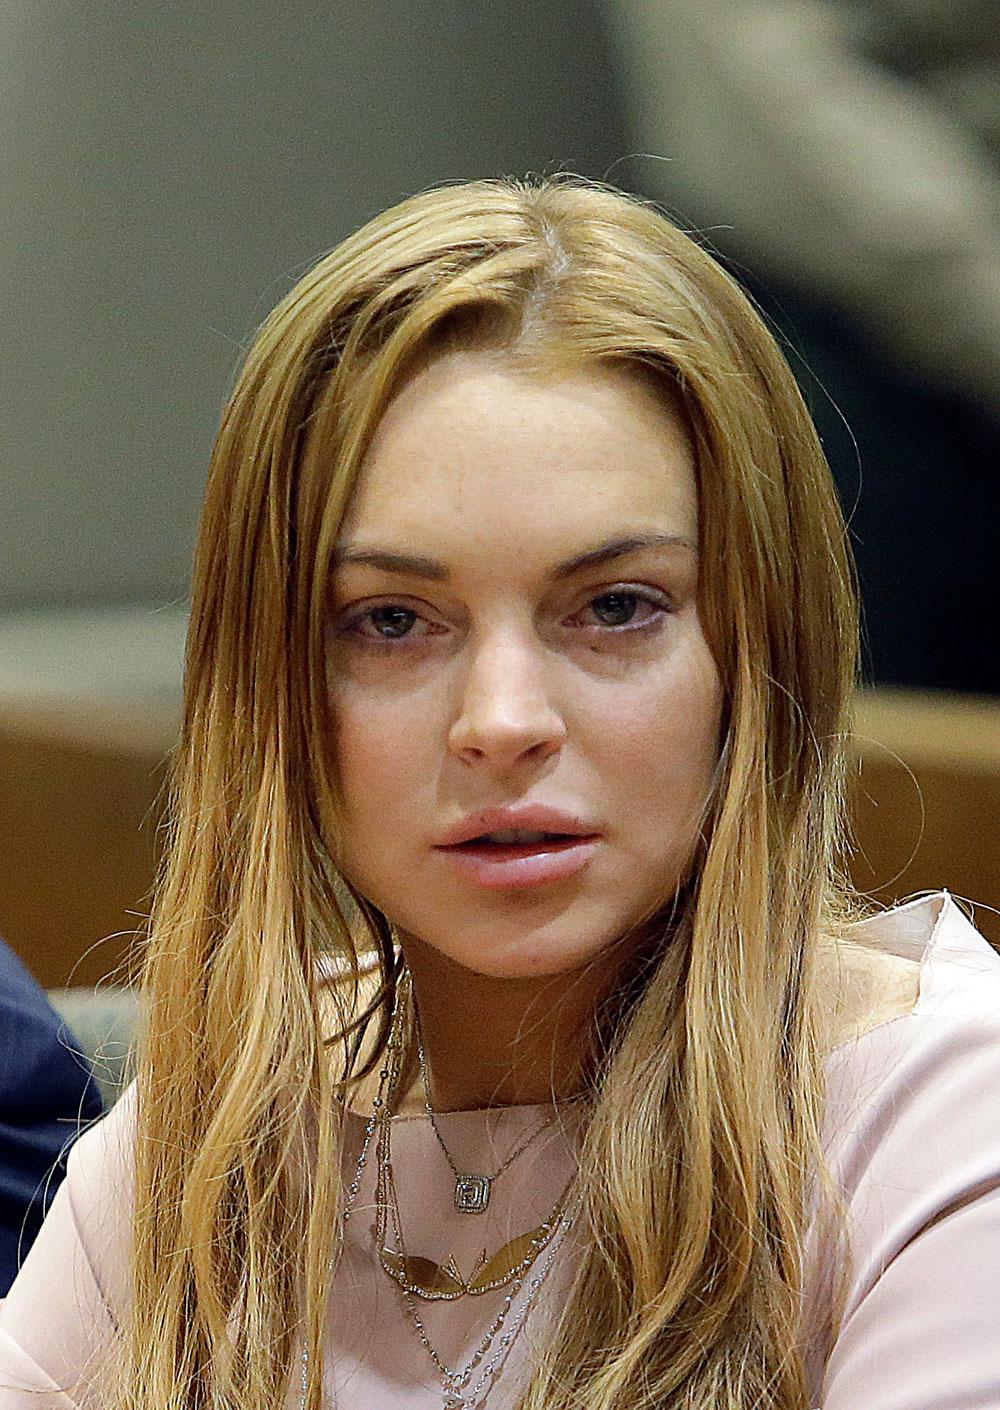 Lindsay Lohan i rätten i mars 2013 efter den bilkrasch som senare ledde till samhällstjänsten.